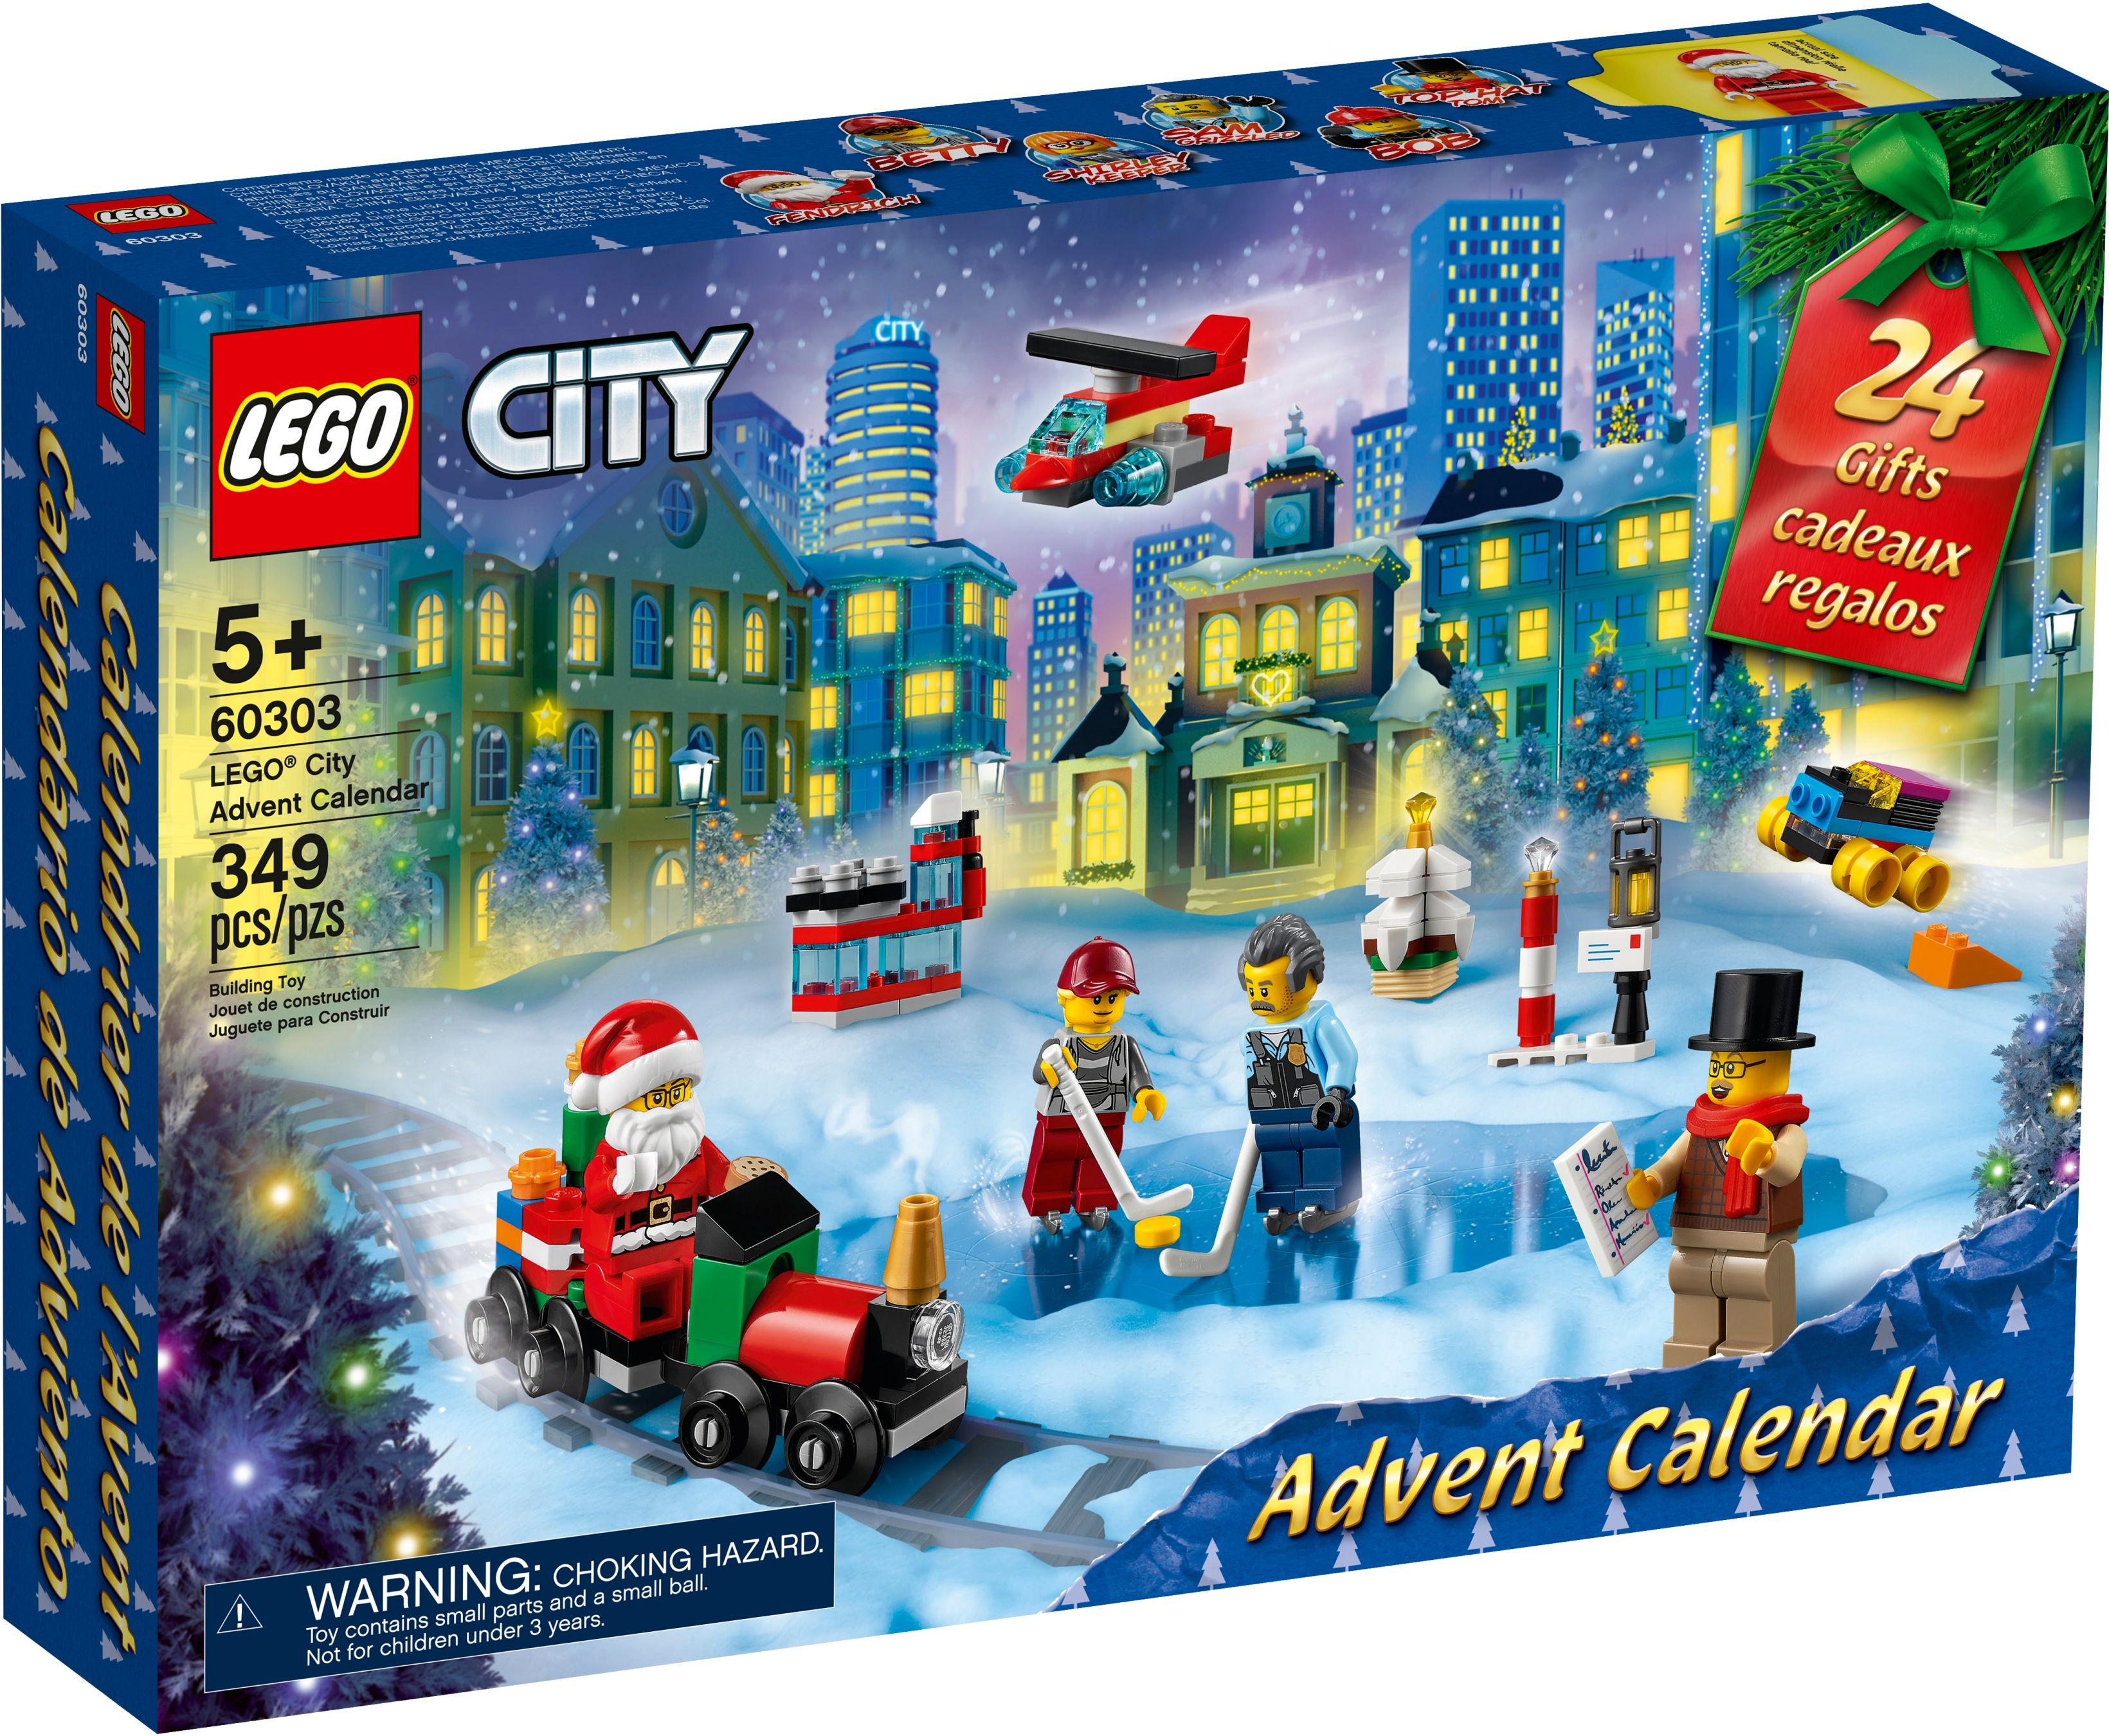 LEGO City 60303 LEGO® City Adventskalender LEGO_60303_box1_v39.jpg